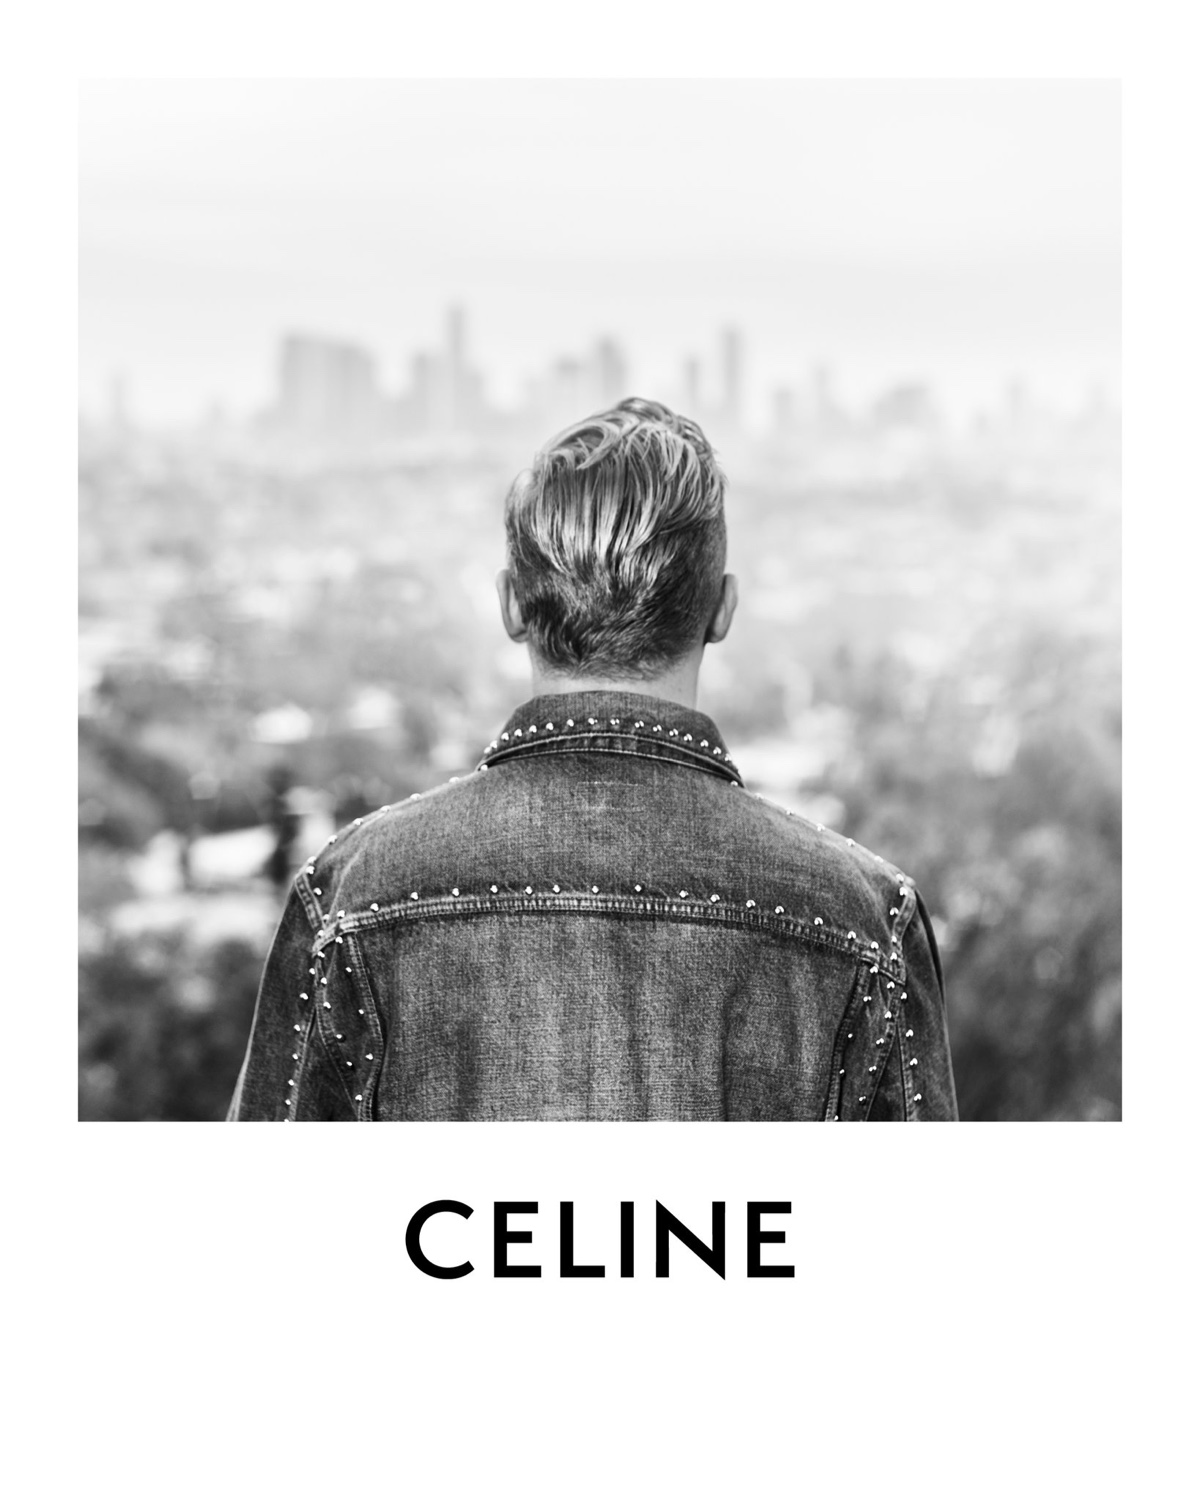 Jack White Studded Denim Jacket Celine Campaign 2022